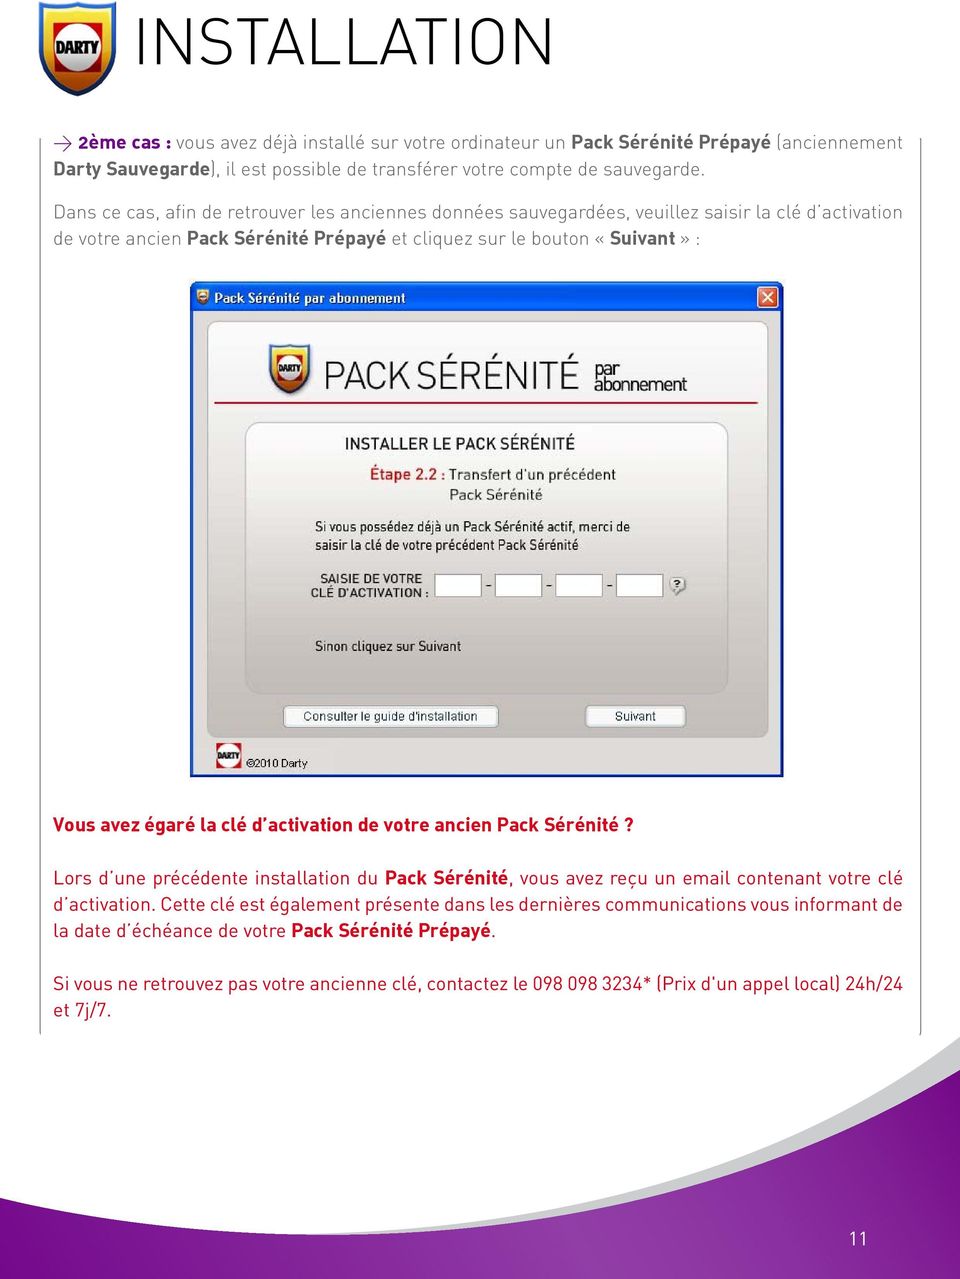 égaré la clé d activation de votre ancien Pack Sérénité? Lors d une précédente installation du Pack Sérénité, vous avez reçu un email contenant votre clé d activation.